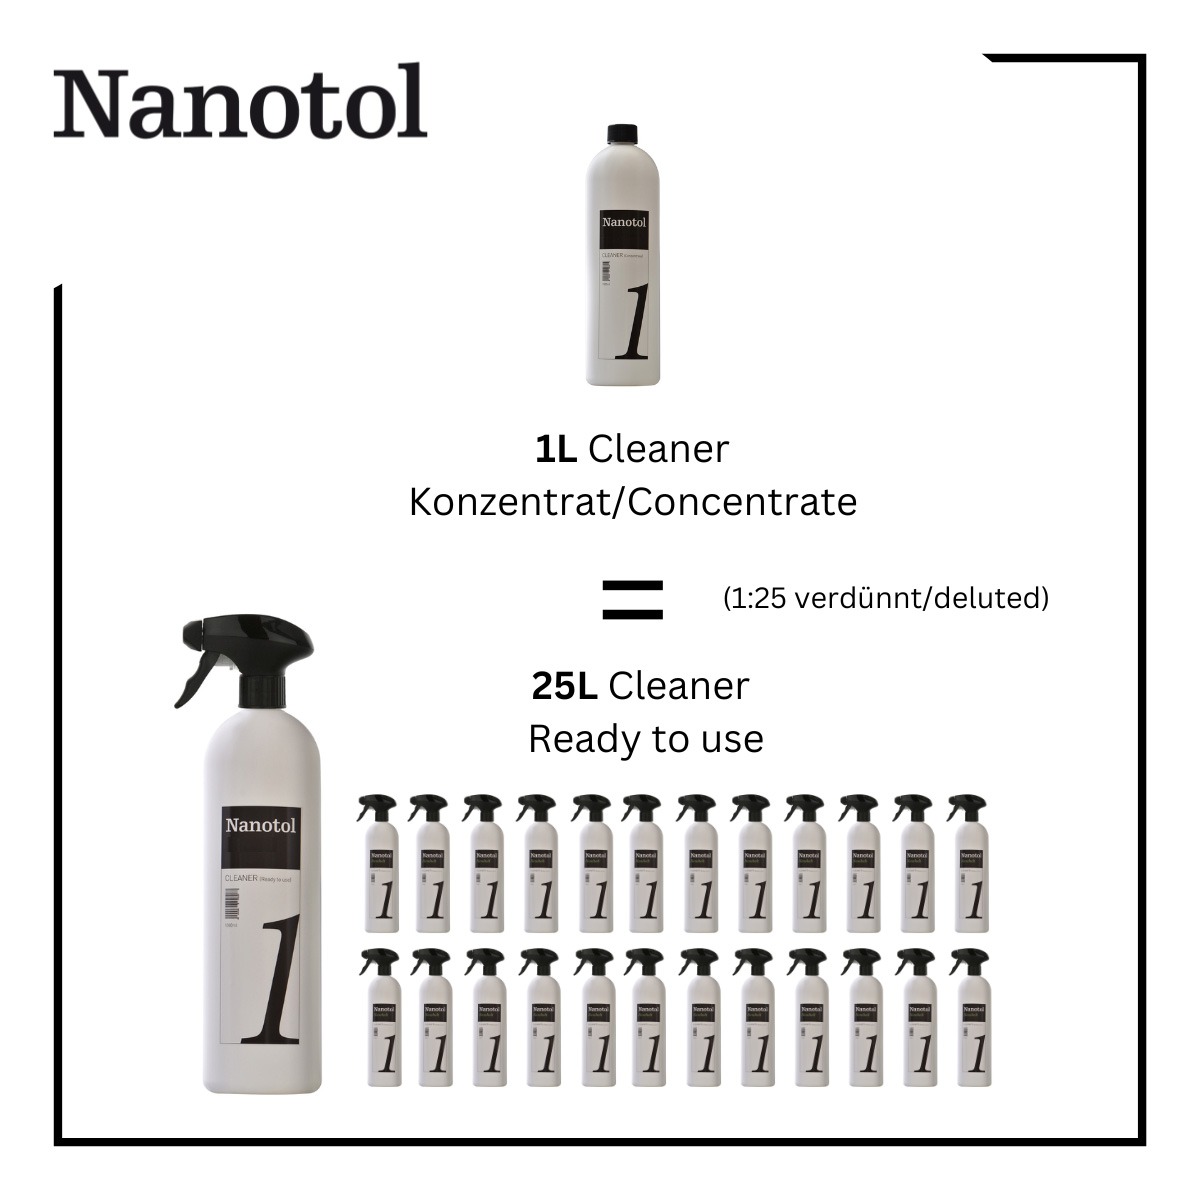 1 Liter Nanotol Haushalt Cleaner Konzentrat entsprechen 25 Liter verdünnten Haushaltsreiniger